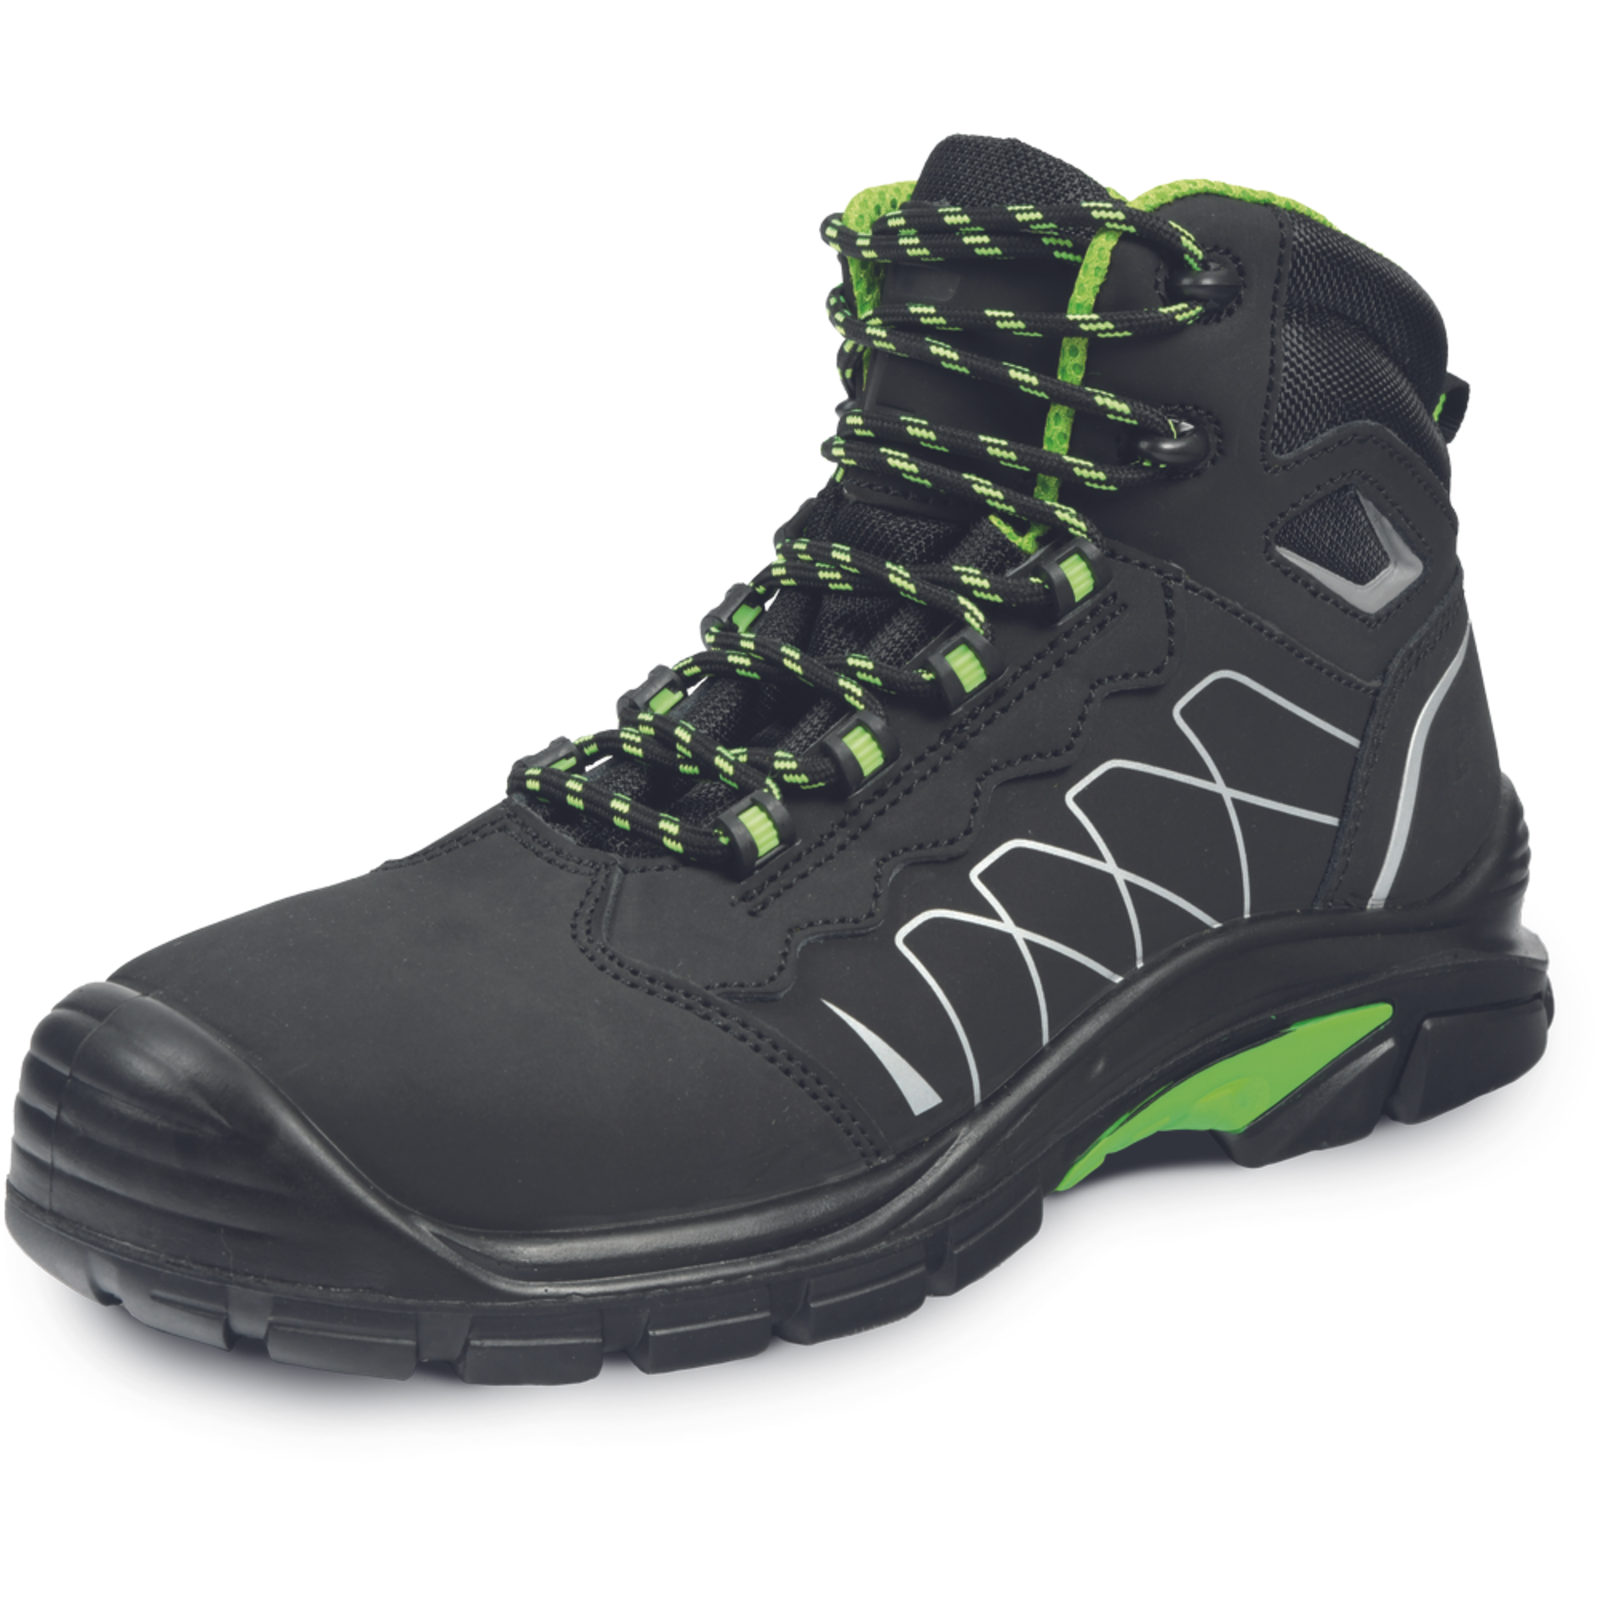 Bezpečnostná členková obuv Cerva Tornafort MF S3 SRC - veľkosť: 44, farba: čierna/zelená